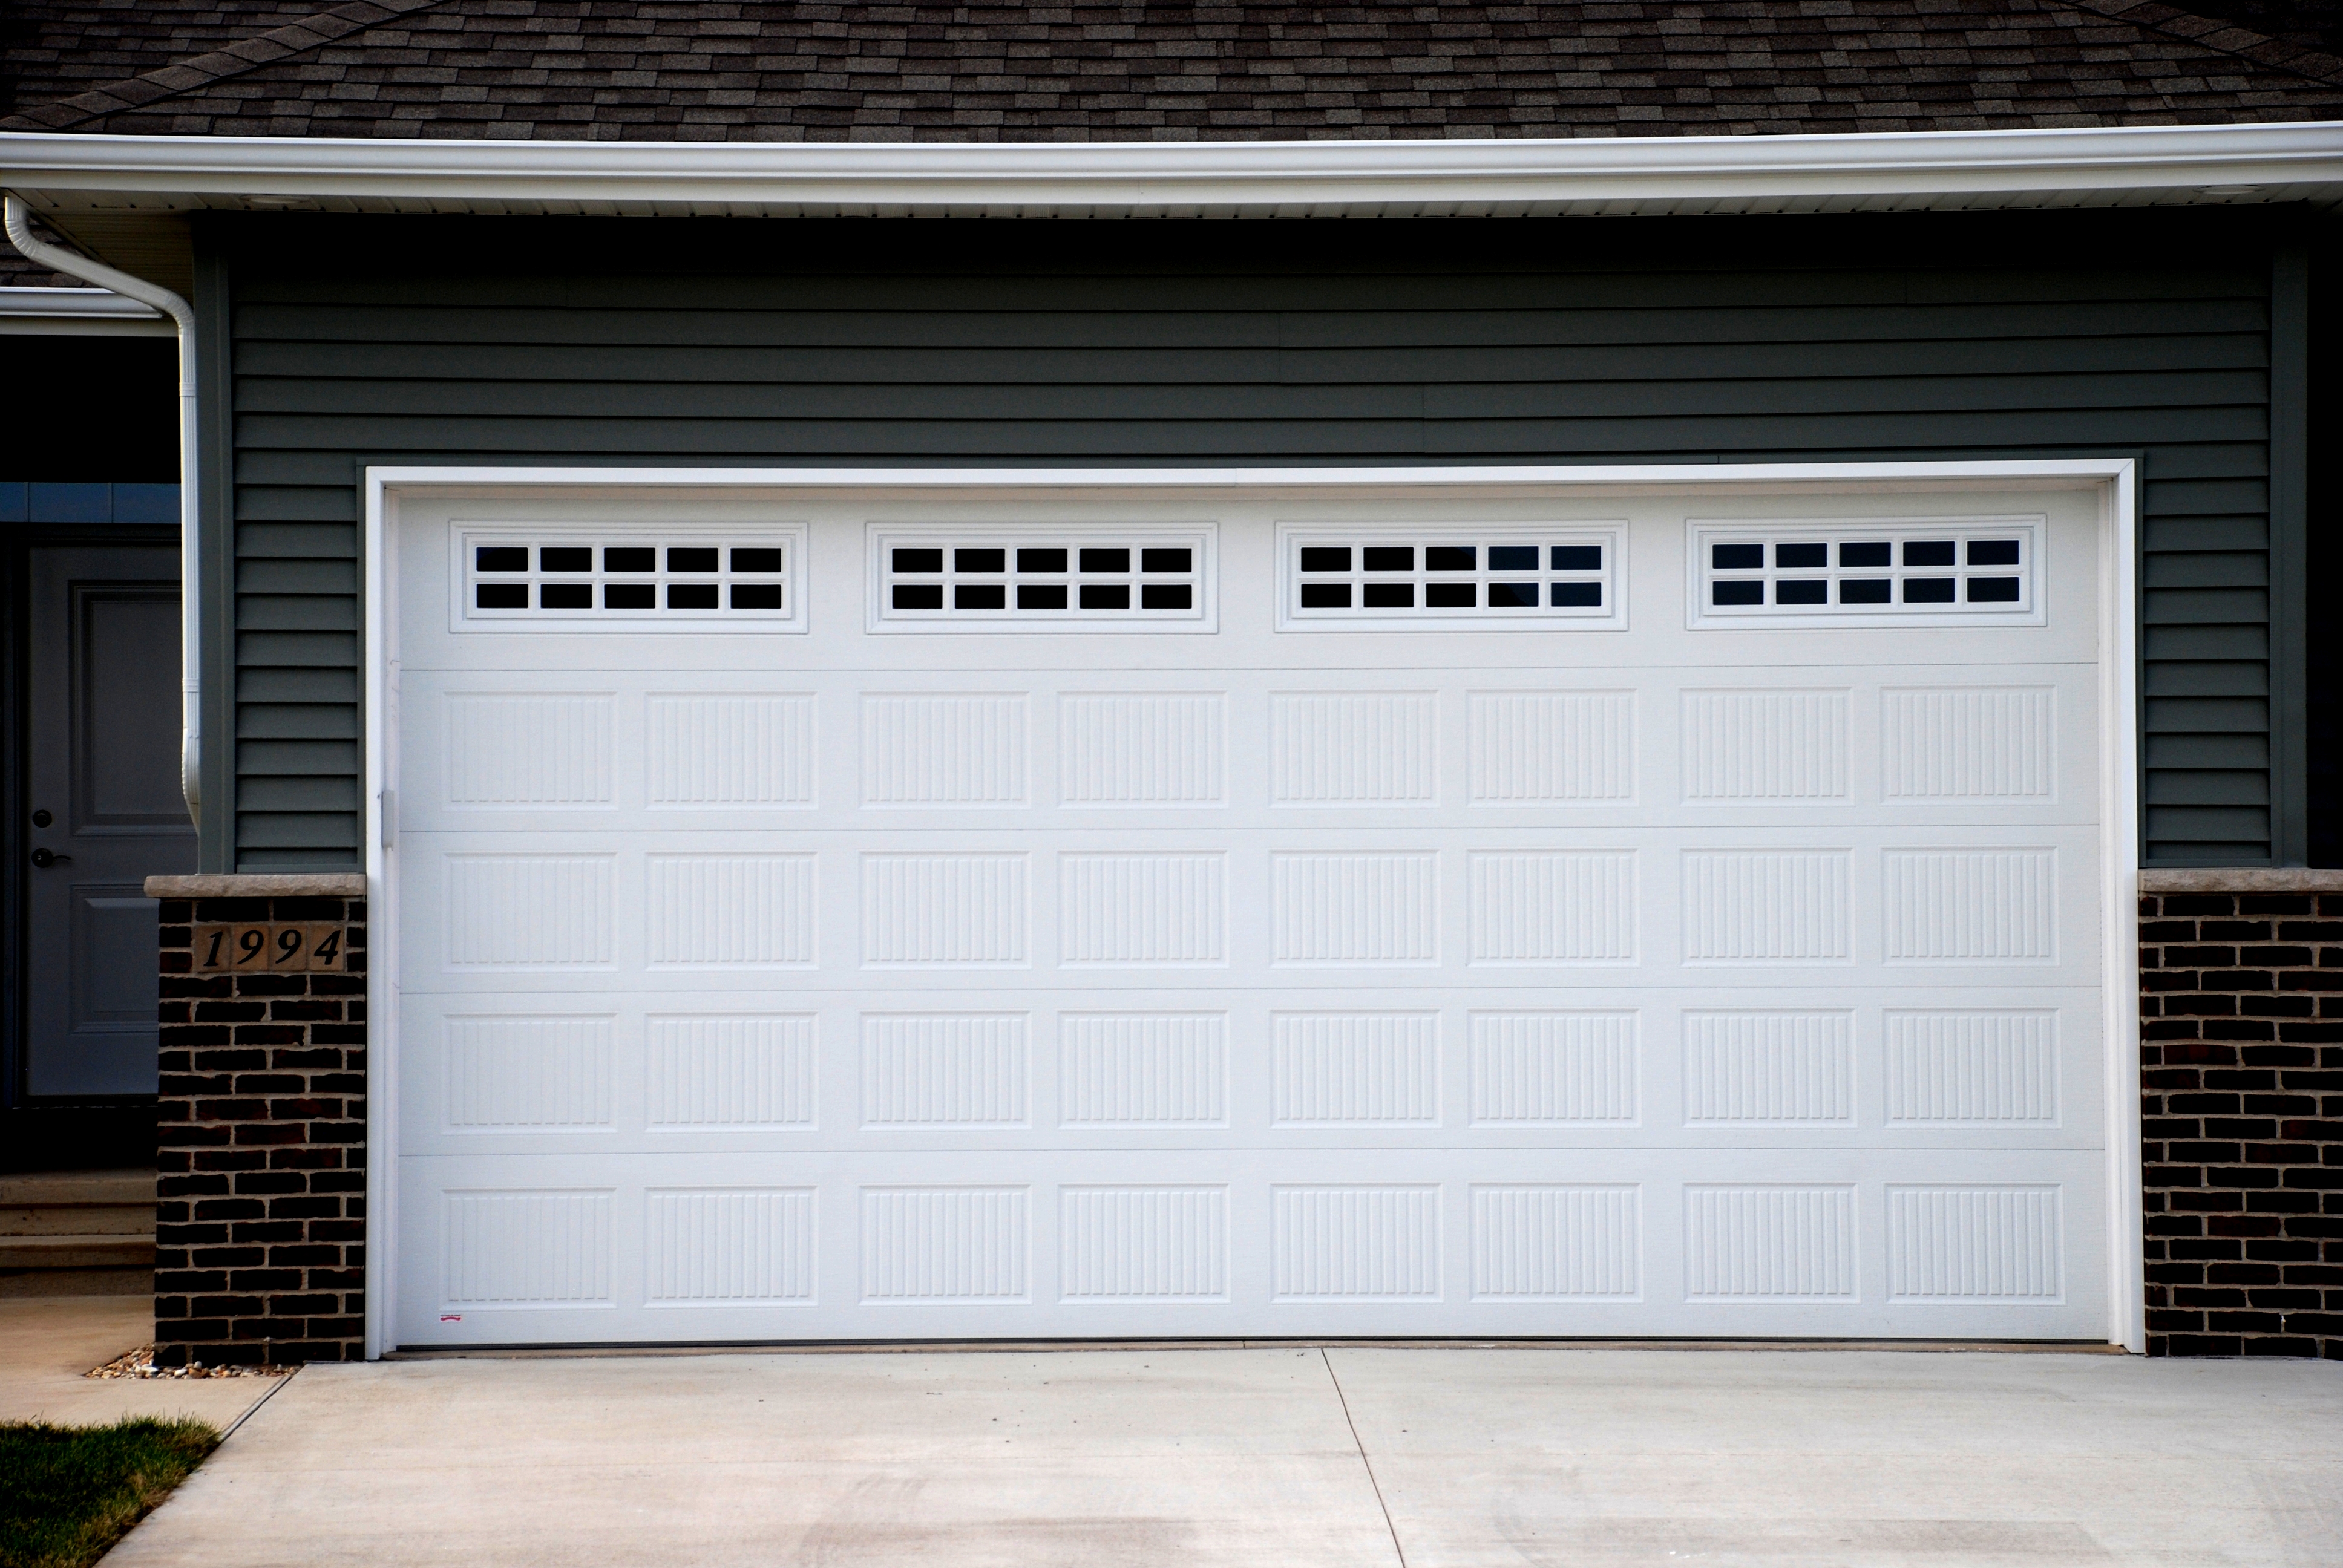 Good condition of a garage door